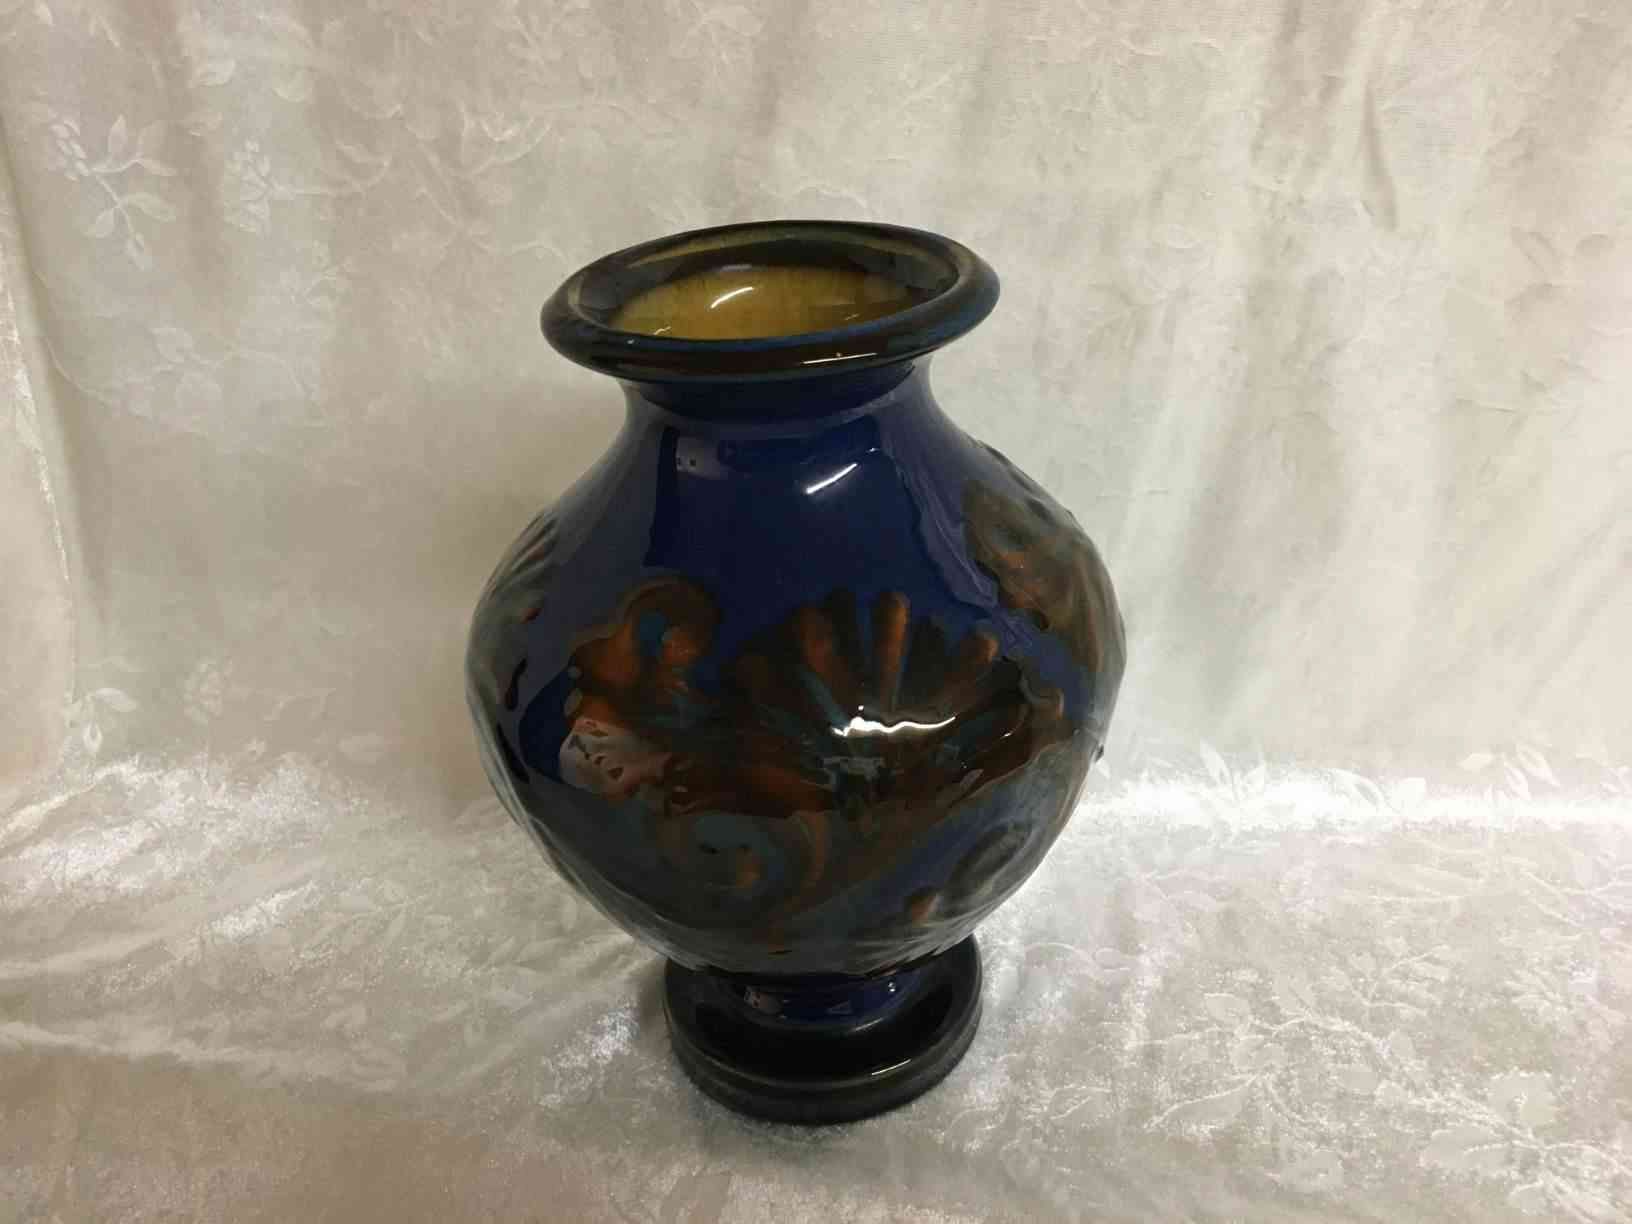 Kähler - Vase i rød/ blå og brun farve og kohorn glasur i perfekt stand. Vasen er fra perioden 1915-1925 og dekorationen er typisk Sofie eller Nelly Lundstein. Pris: 2.400,- Kr.